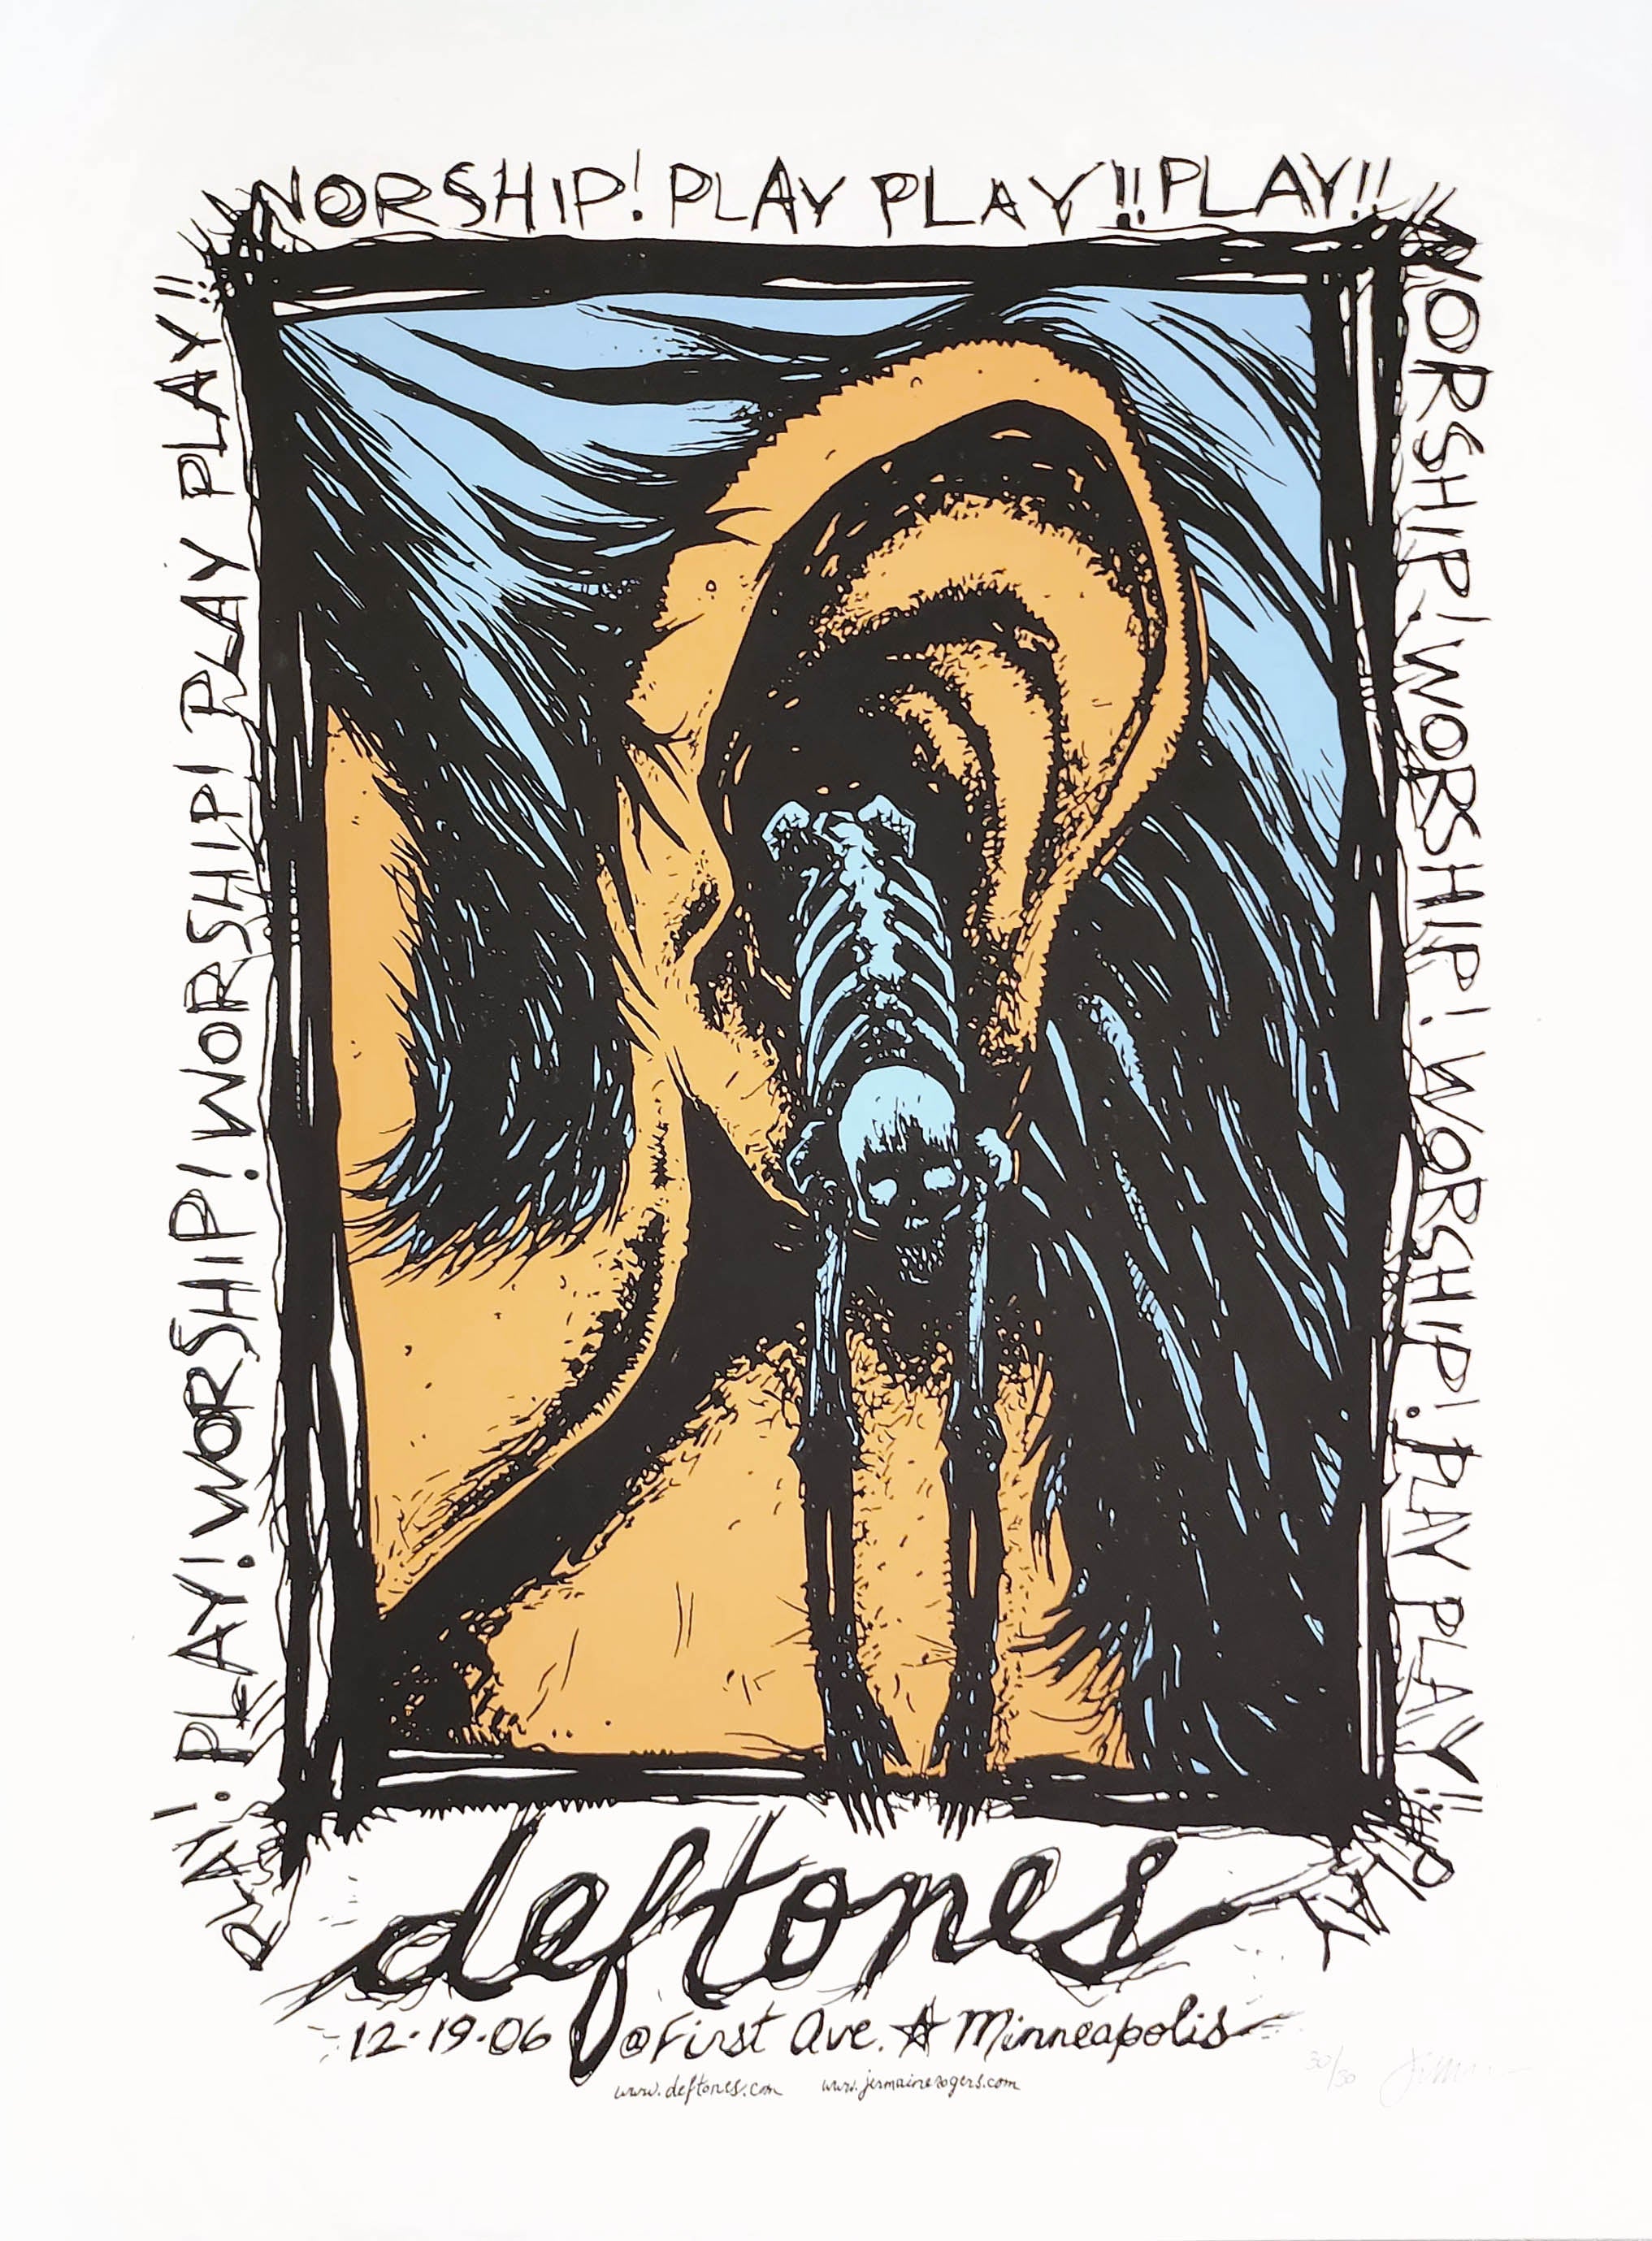 Deftones - Worship Play! 30/30 on White. Minneapolis, MN 12.19.06. RARE!